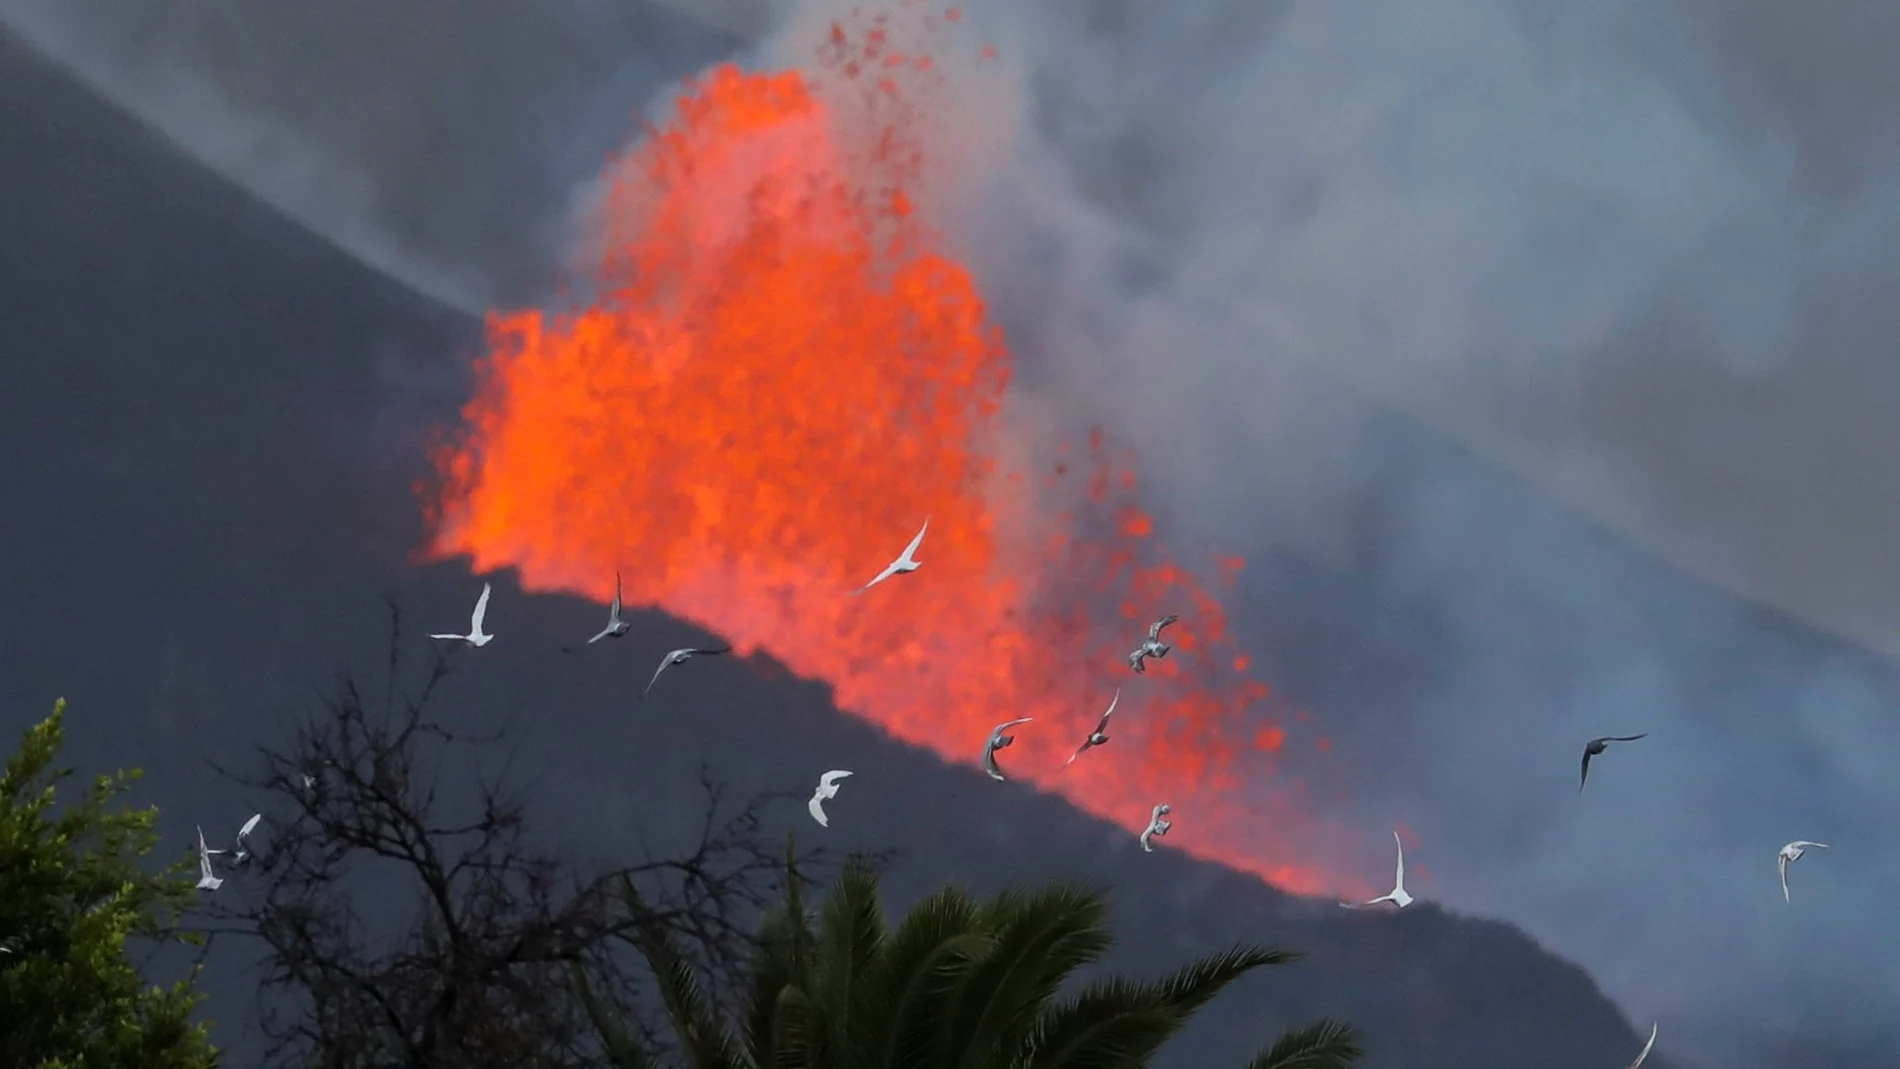 Las palomas vuelan al amanecer frente a la lava y el humo, tras la erupción de un volcán en la isla canaria de La Palma